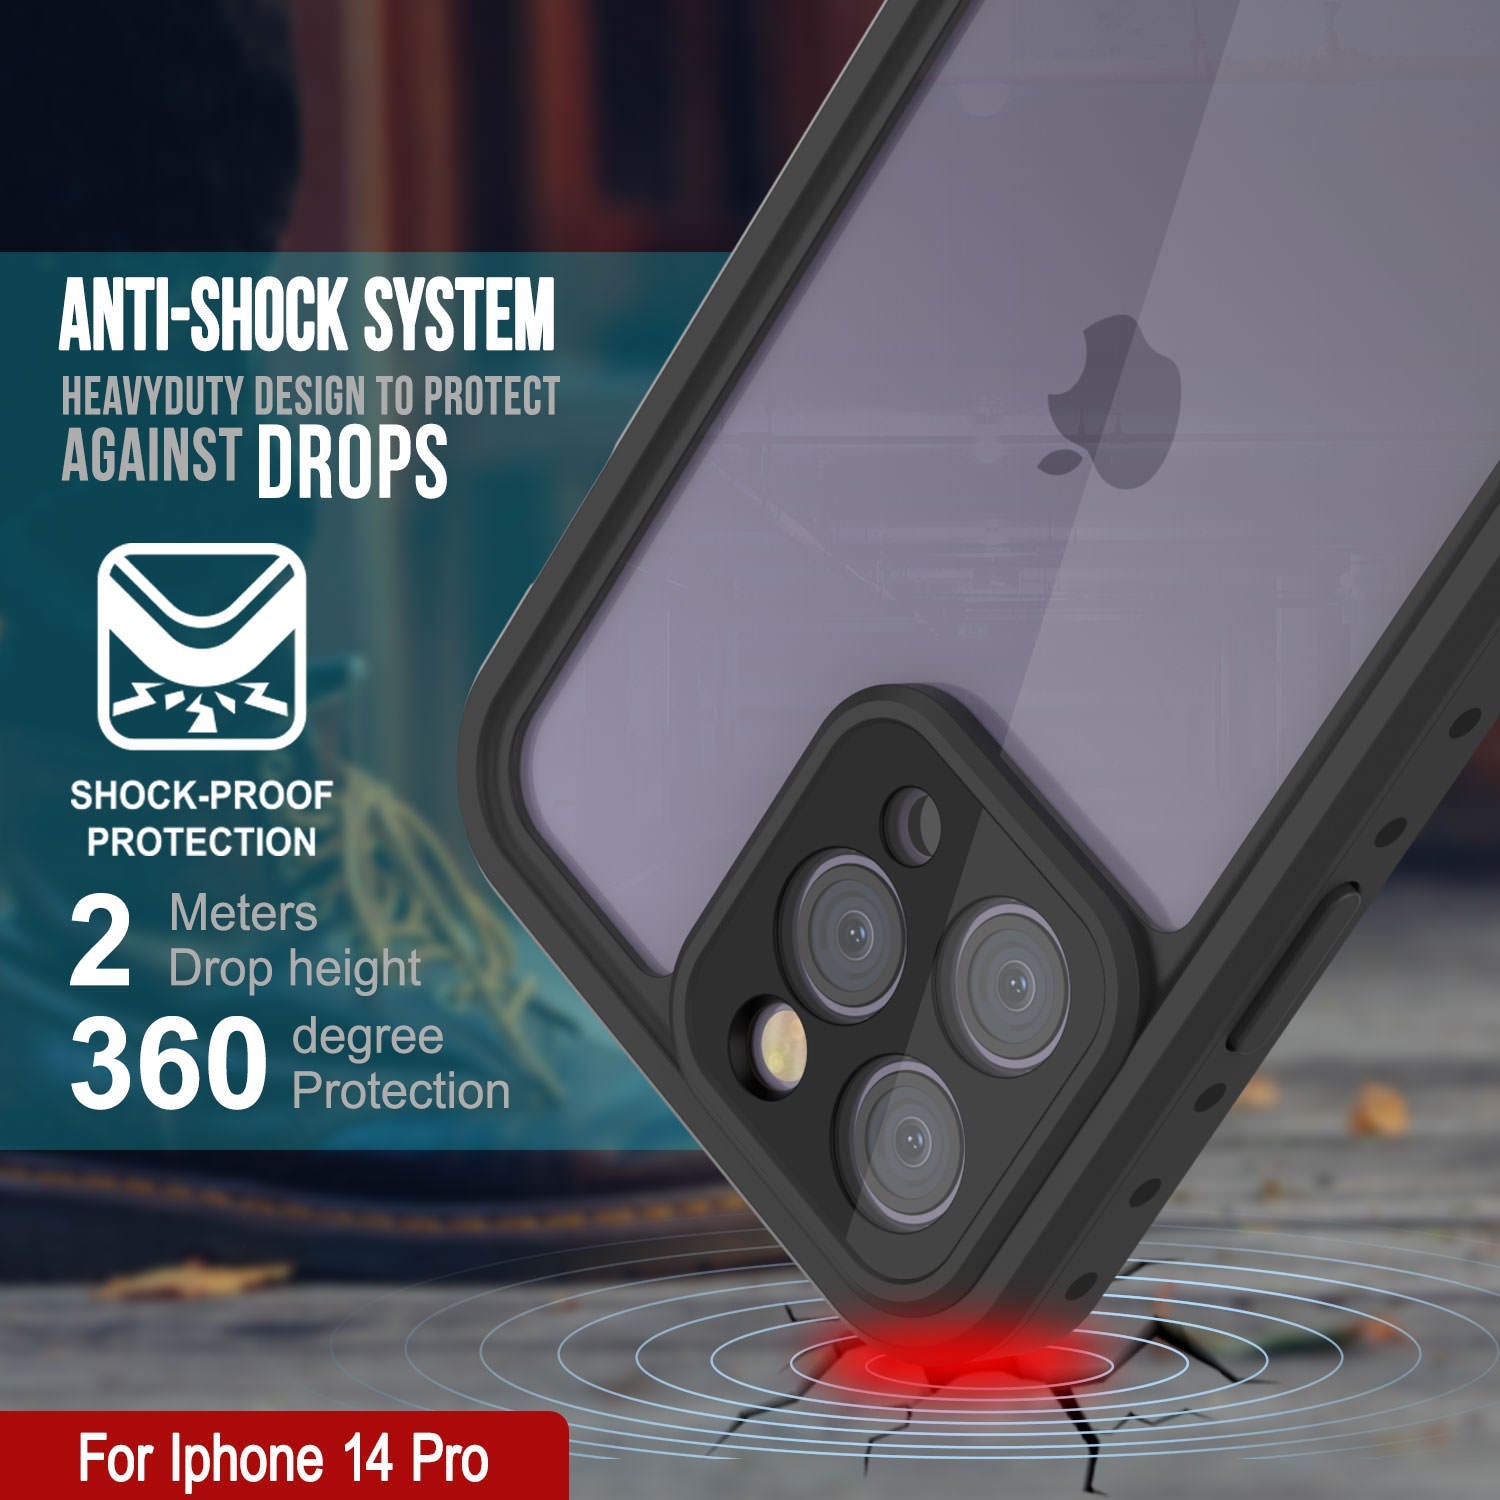 iPhone 14 Pro Waterproof IP68 Case, Punkcase [Clear] [StudStar Series] [Slim Fit] [Dirtproof]